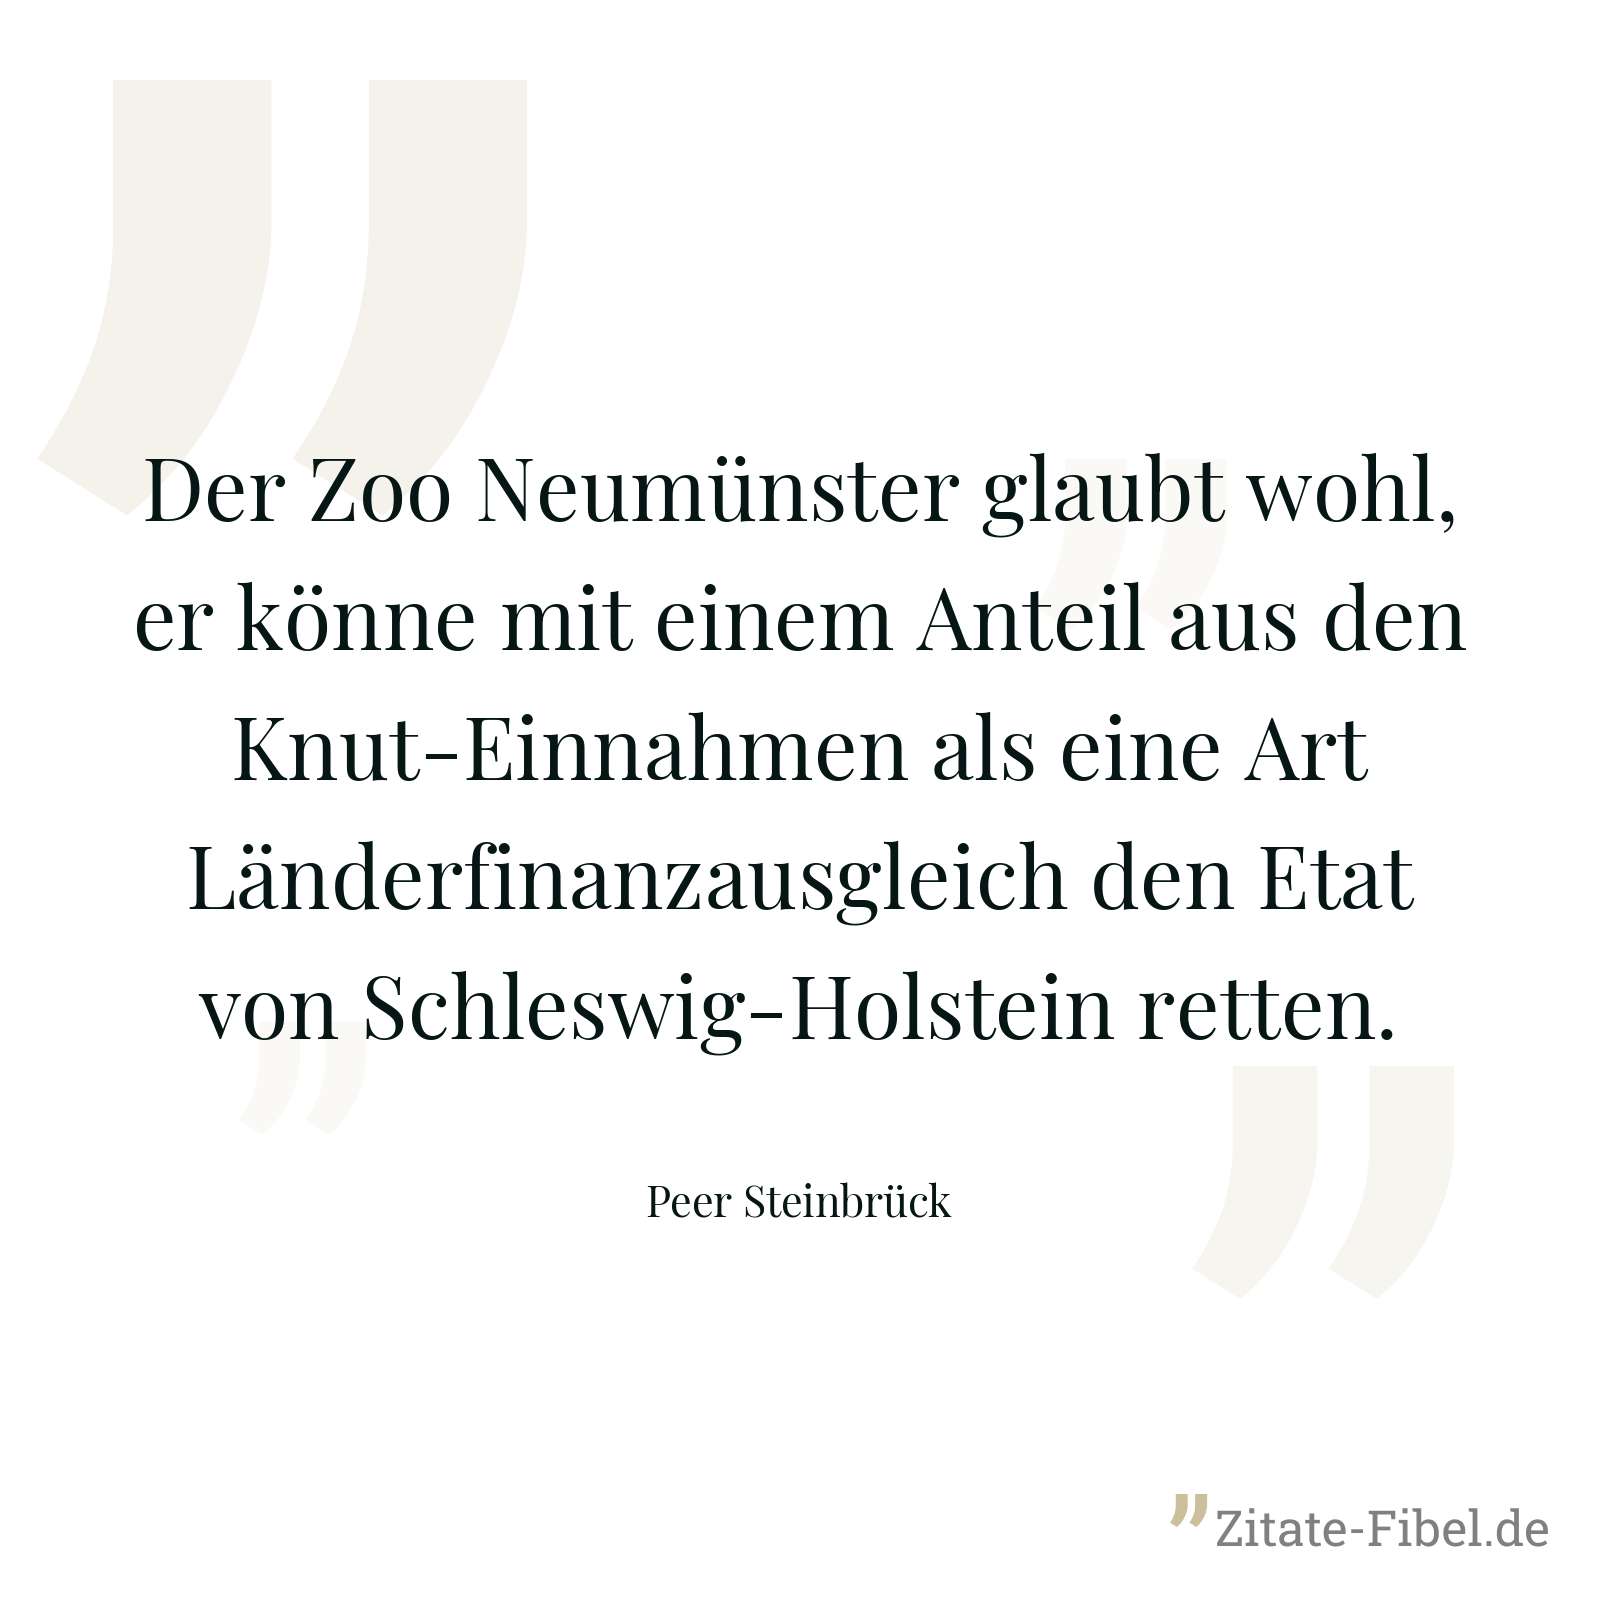 Der Zoo Neumünster glaubt wohl, er könne mit einem Anteil aus den Knut-Einnahmen als eine Art Länderfinanzausgleich den Etat von Schleswig-Holstein retten. - Peer Steinbrück